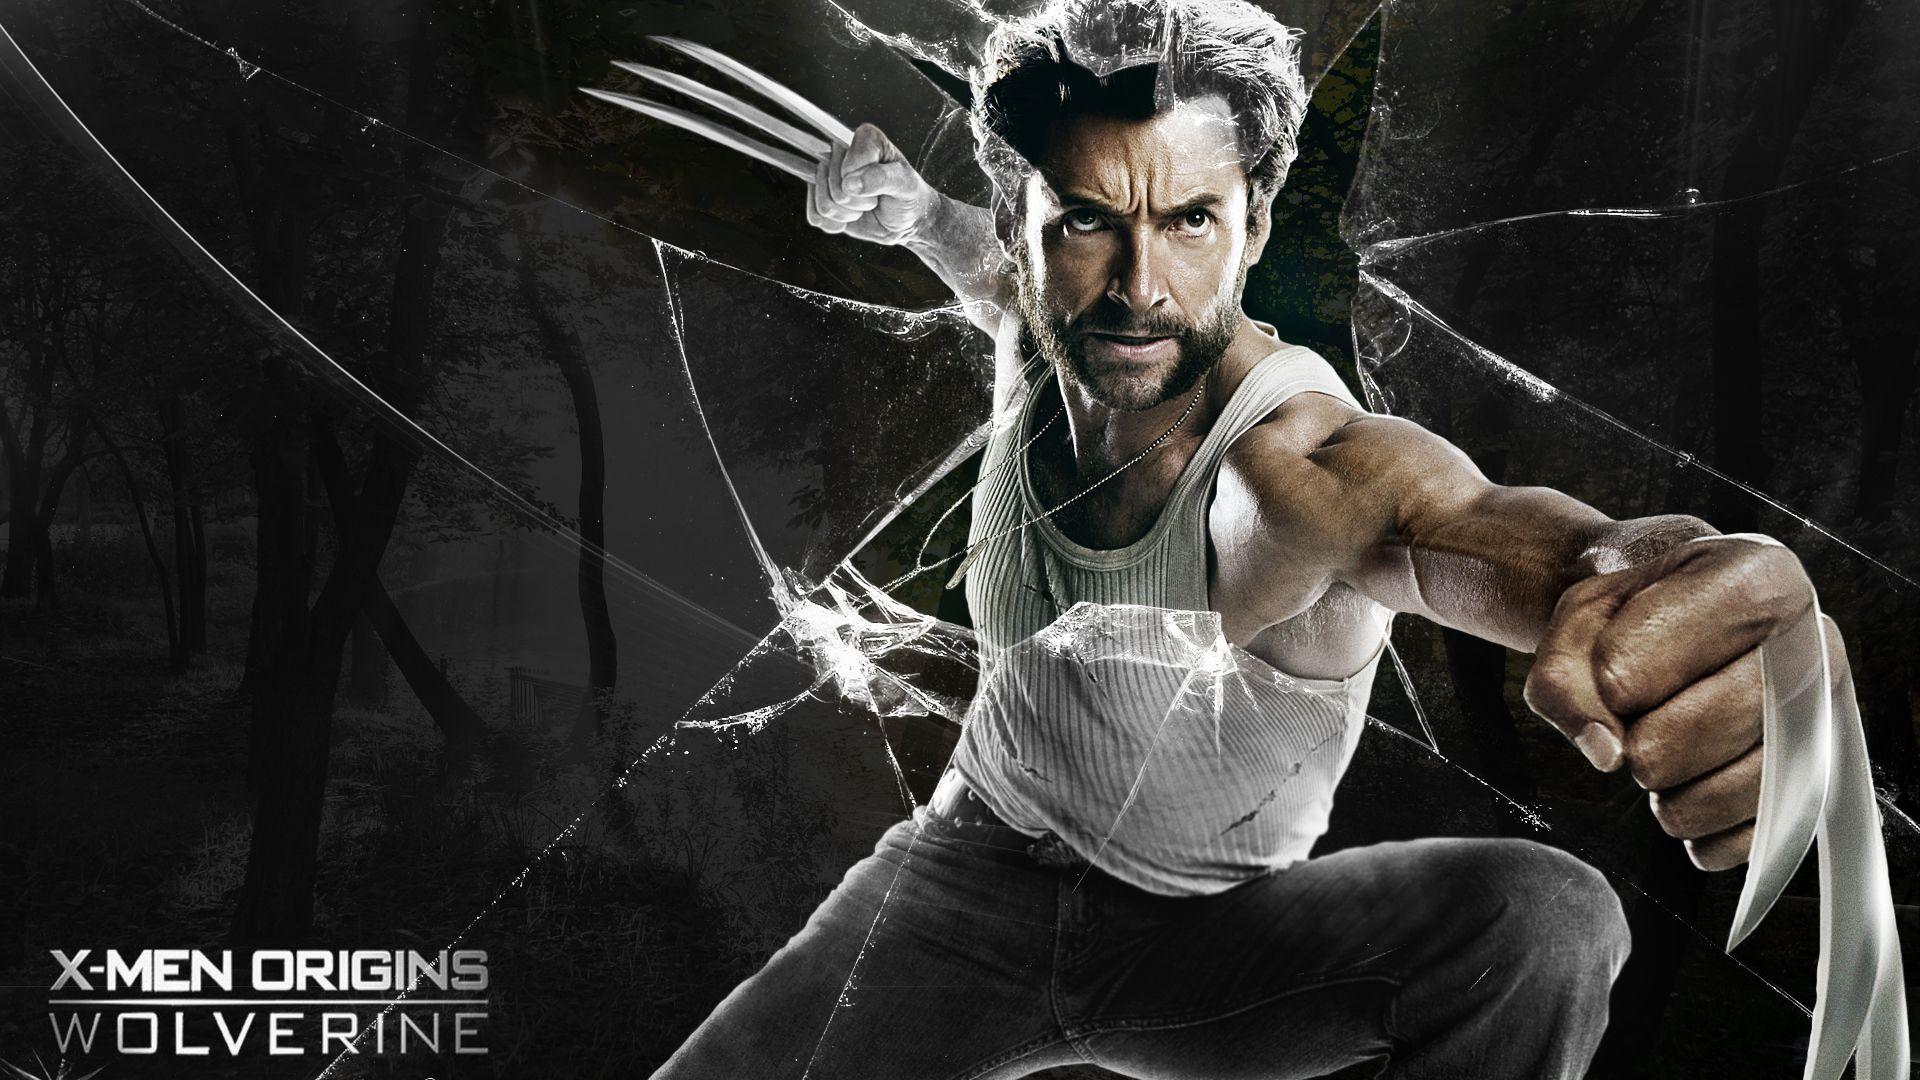 Wolverine Wallpaper 1080p. Wolverine